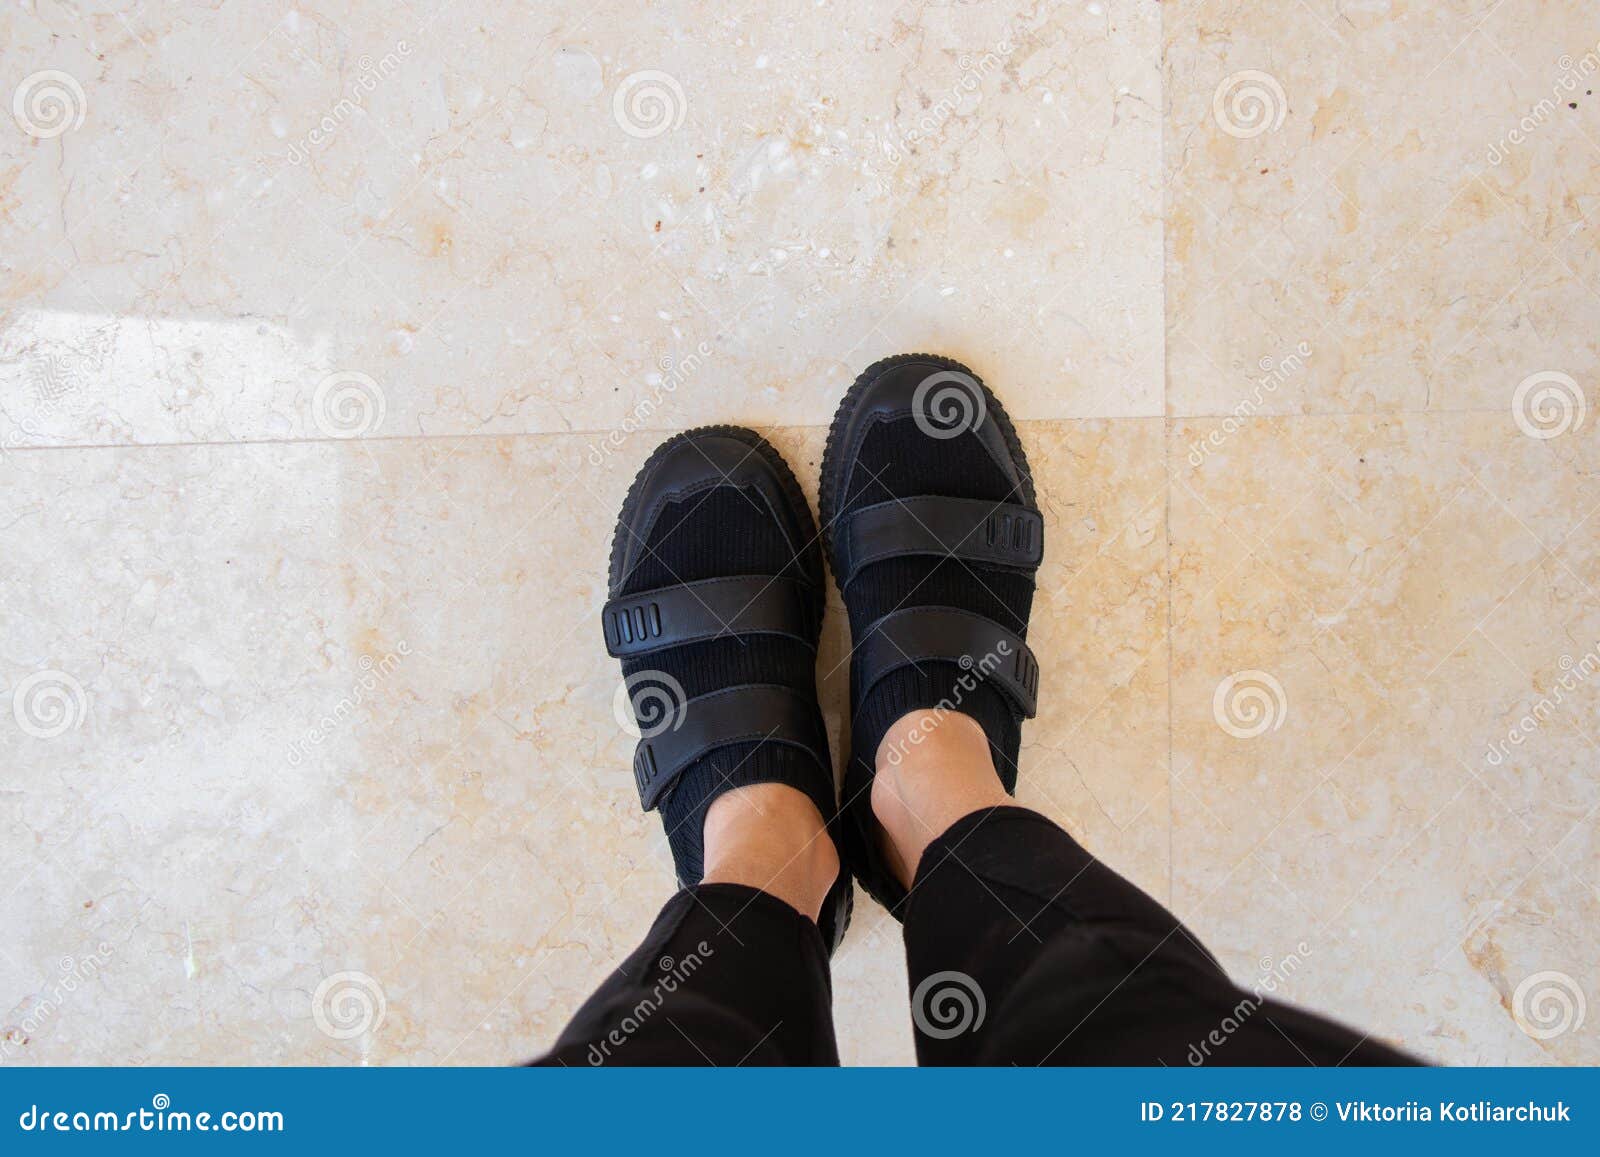 Piernas Femeninas En Zapatillas Deportivas Negras En El Suelo En Un Azulejo  Zapatos Para Mujer Foto de archivo - Imagen de asfalto, azul: 217827878